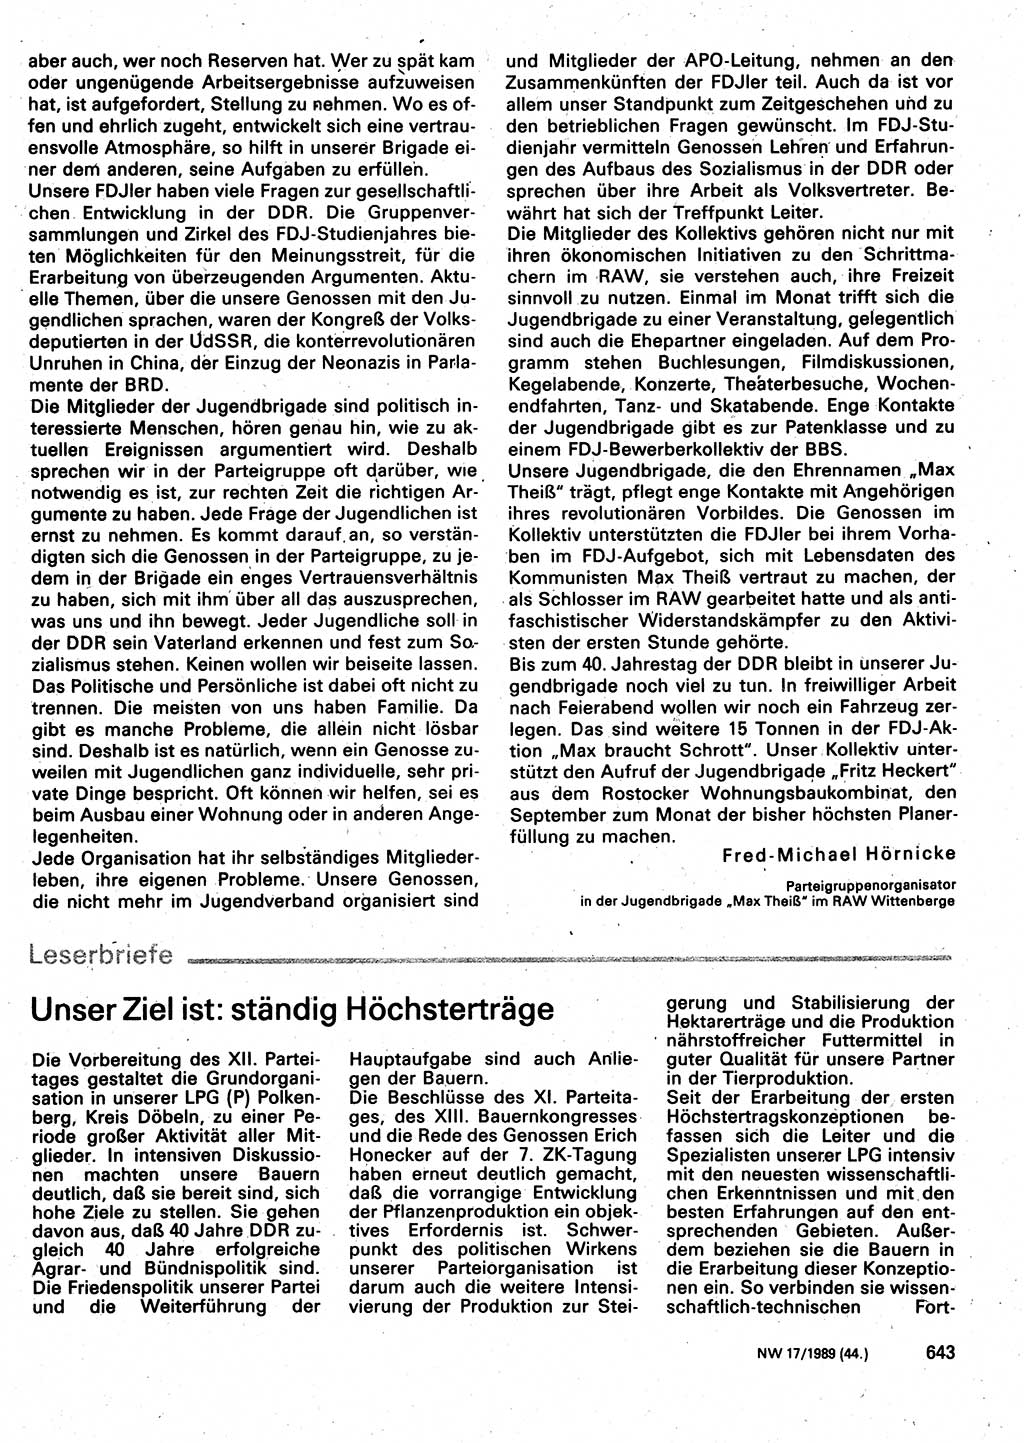 Neuer Weg (NW), Organ des Zentralkomitees (ZK) der SED (Sozialistische Einheitspartei Deutschlands) für Fragen des Parteilebens, 44. Jahrgang [Deutsche Demokratische Republik (DDR)] 1989, Seite 643 (NW ZK SED DDR 1989, S. 643)